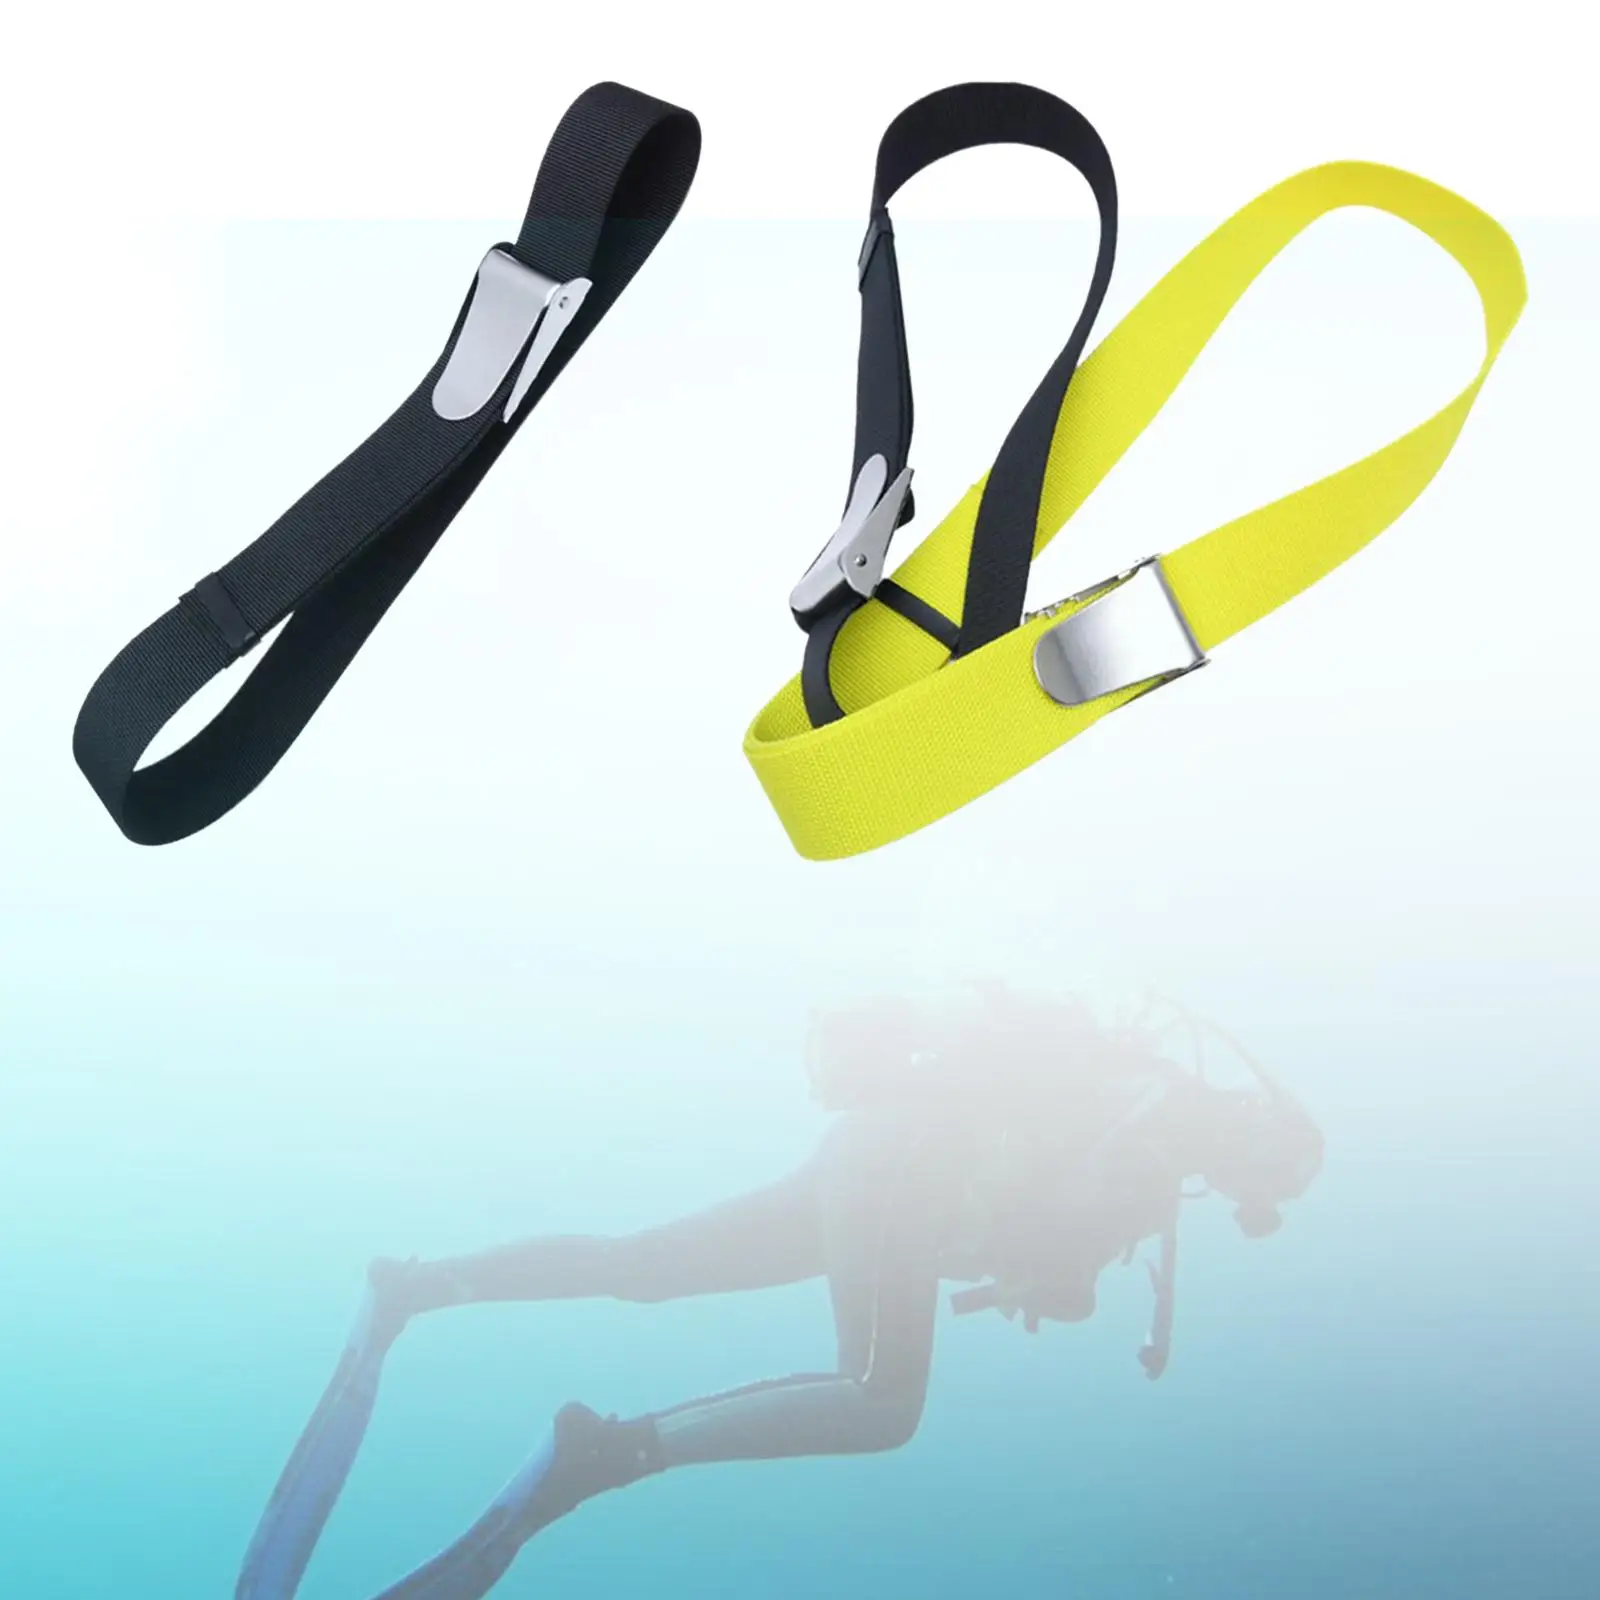 1.35 /1.8m Scuba Diving Weight Belt QR Buckle Dive Snorkeling Waist Belt Webbing Buckle Equipment Gear for Women Men Adults Kids